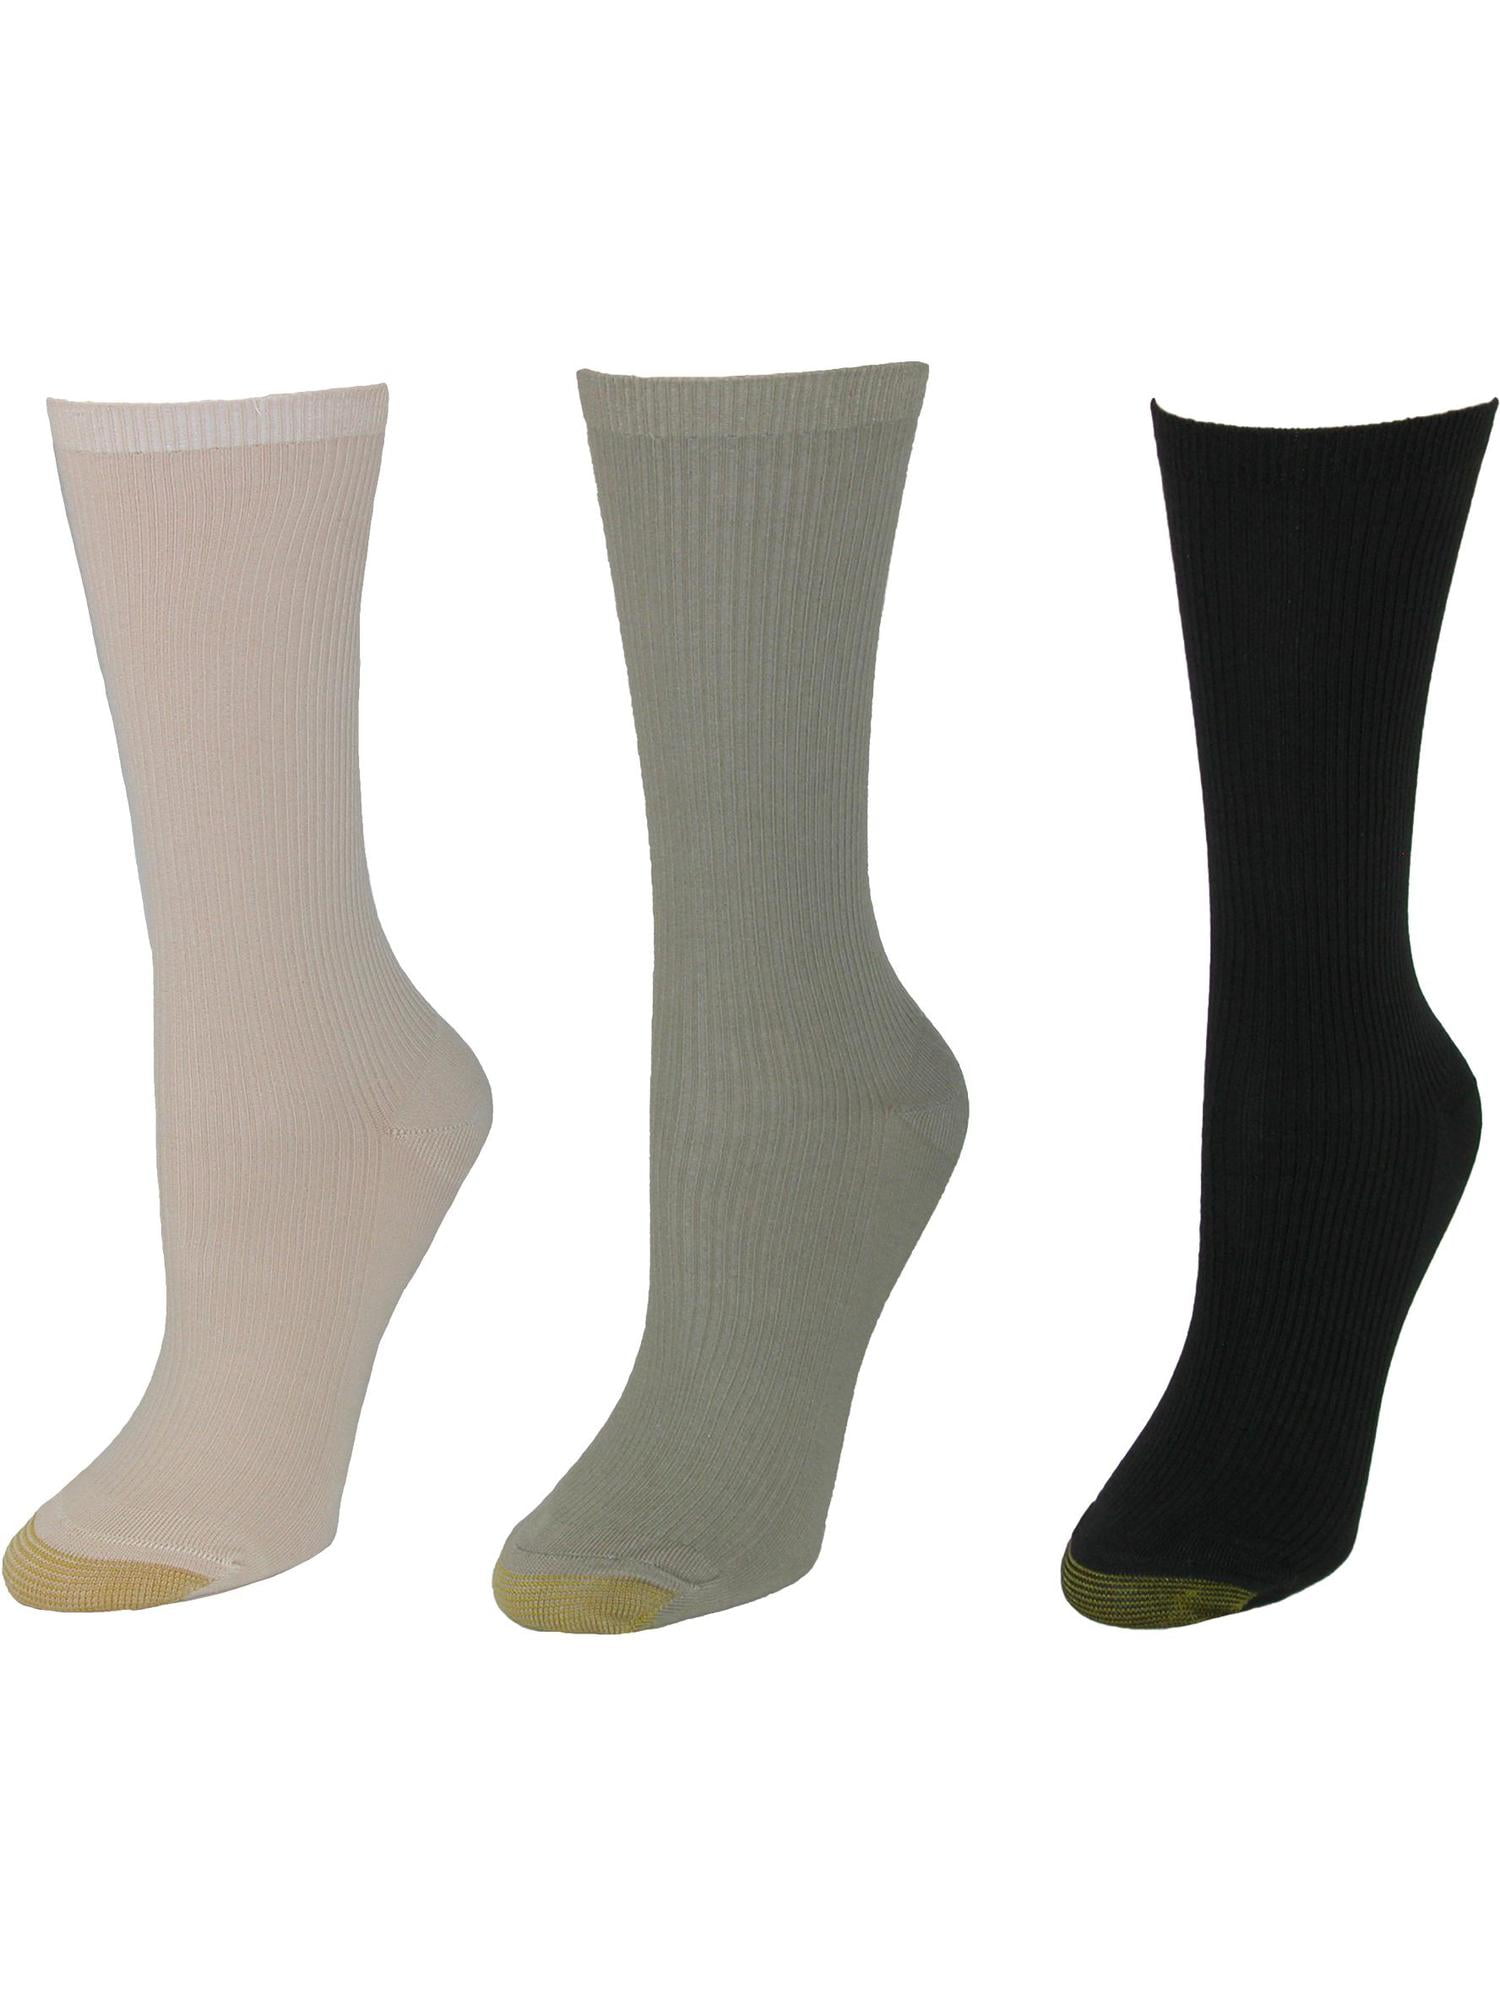 5 Pairs Mens Sport Socks Cotton Rich Non Binding Boot Socks Multipack Gift WHITE